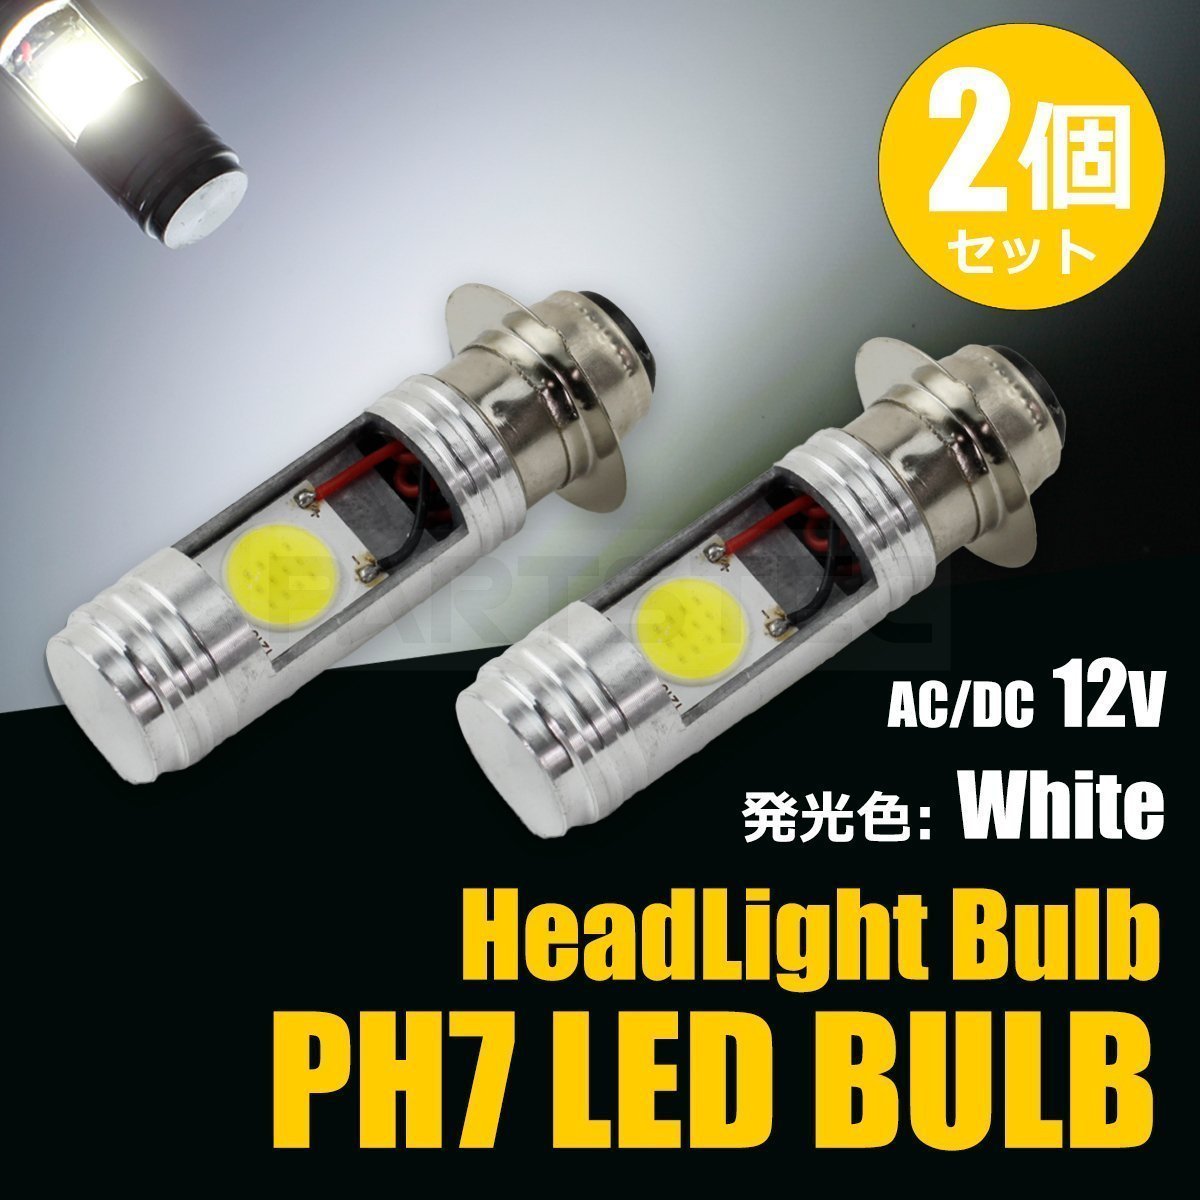 送料無料 ホンダ ズーマー LED PH7 ヘッドライト バルブ 2個セット 12V バイク 直流/交流 P15D 6500k ホワイト Hi/Lo 原付 /134-98x2 SM-N_画像1